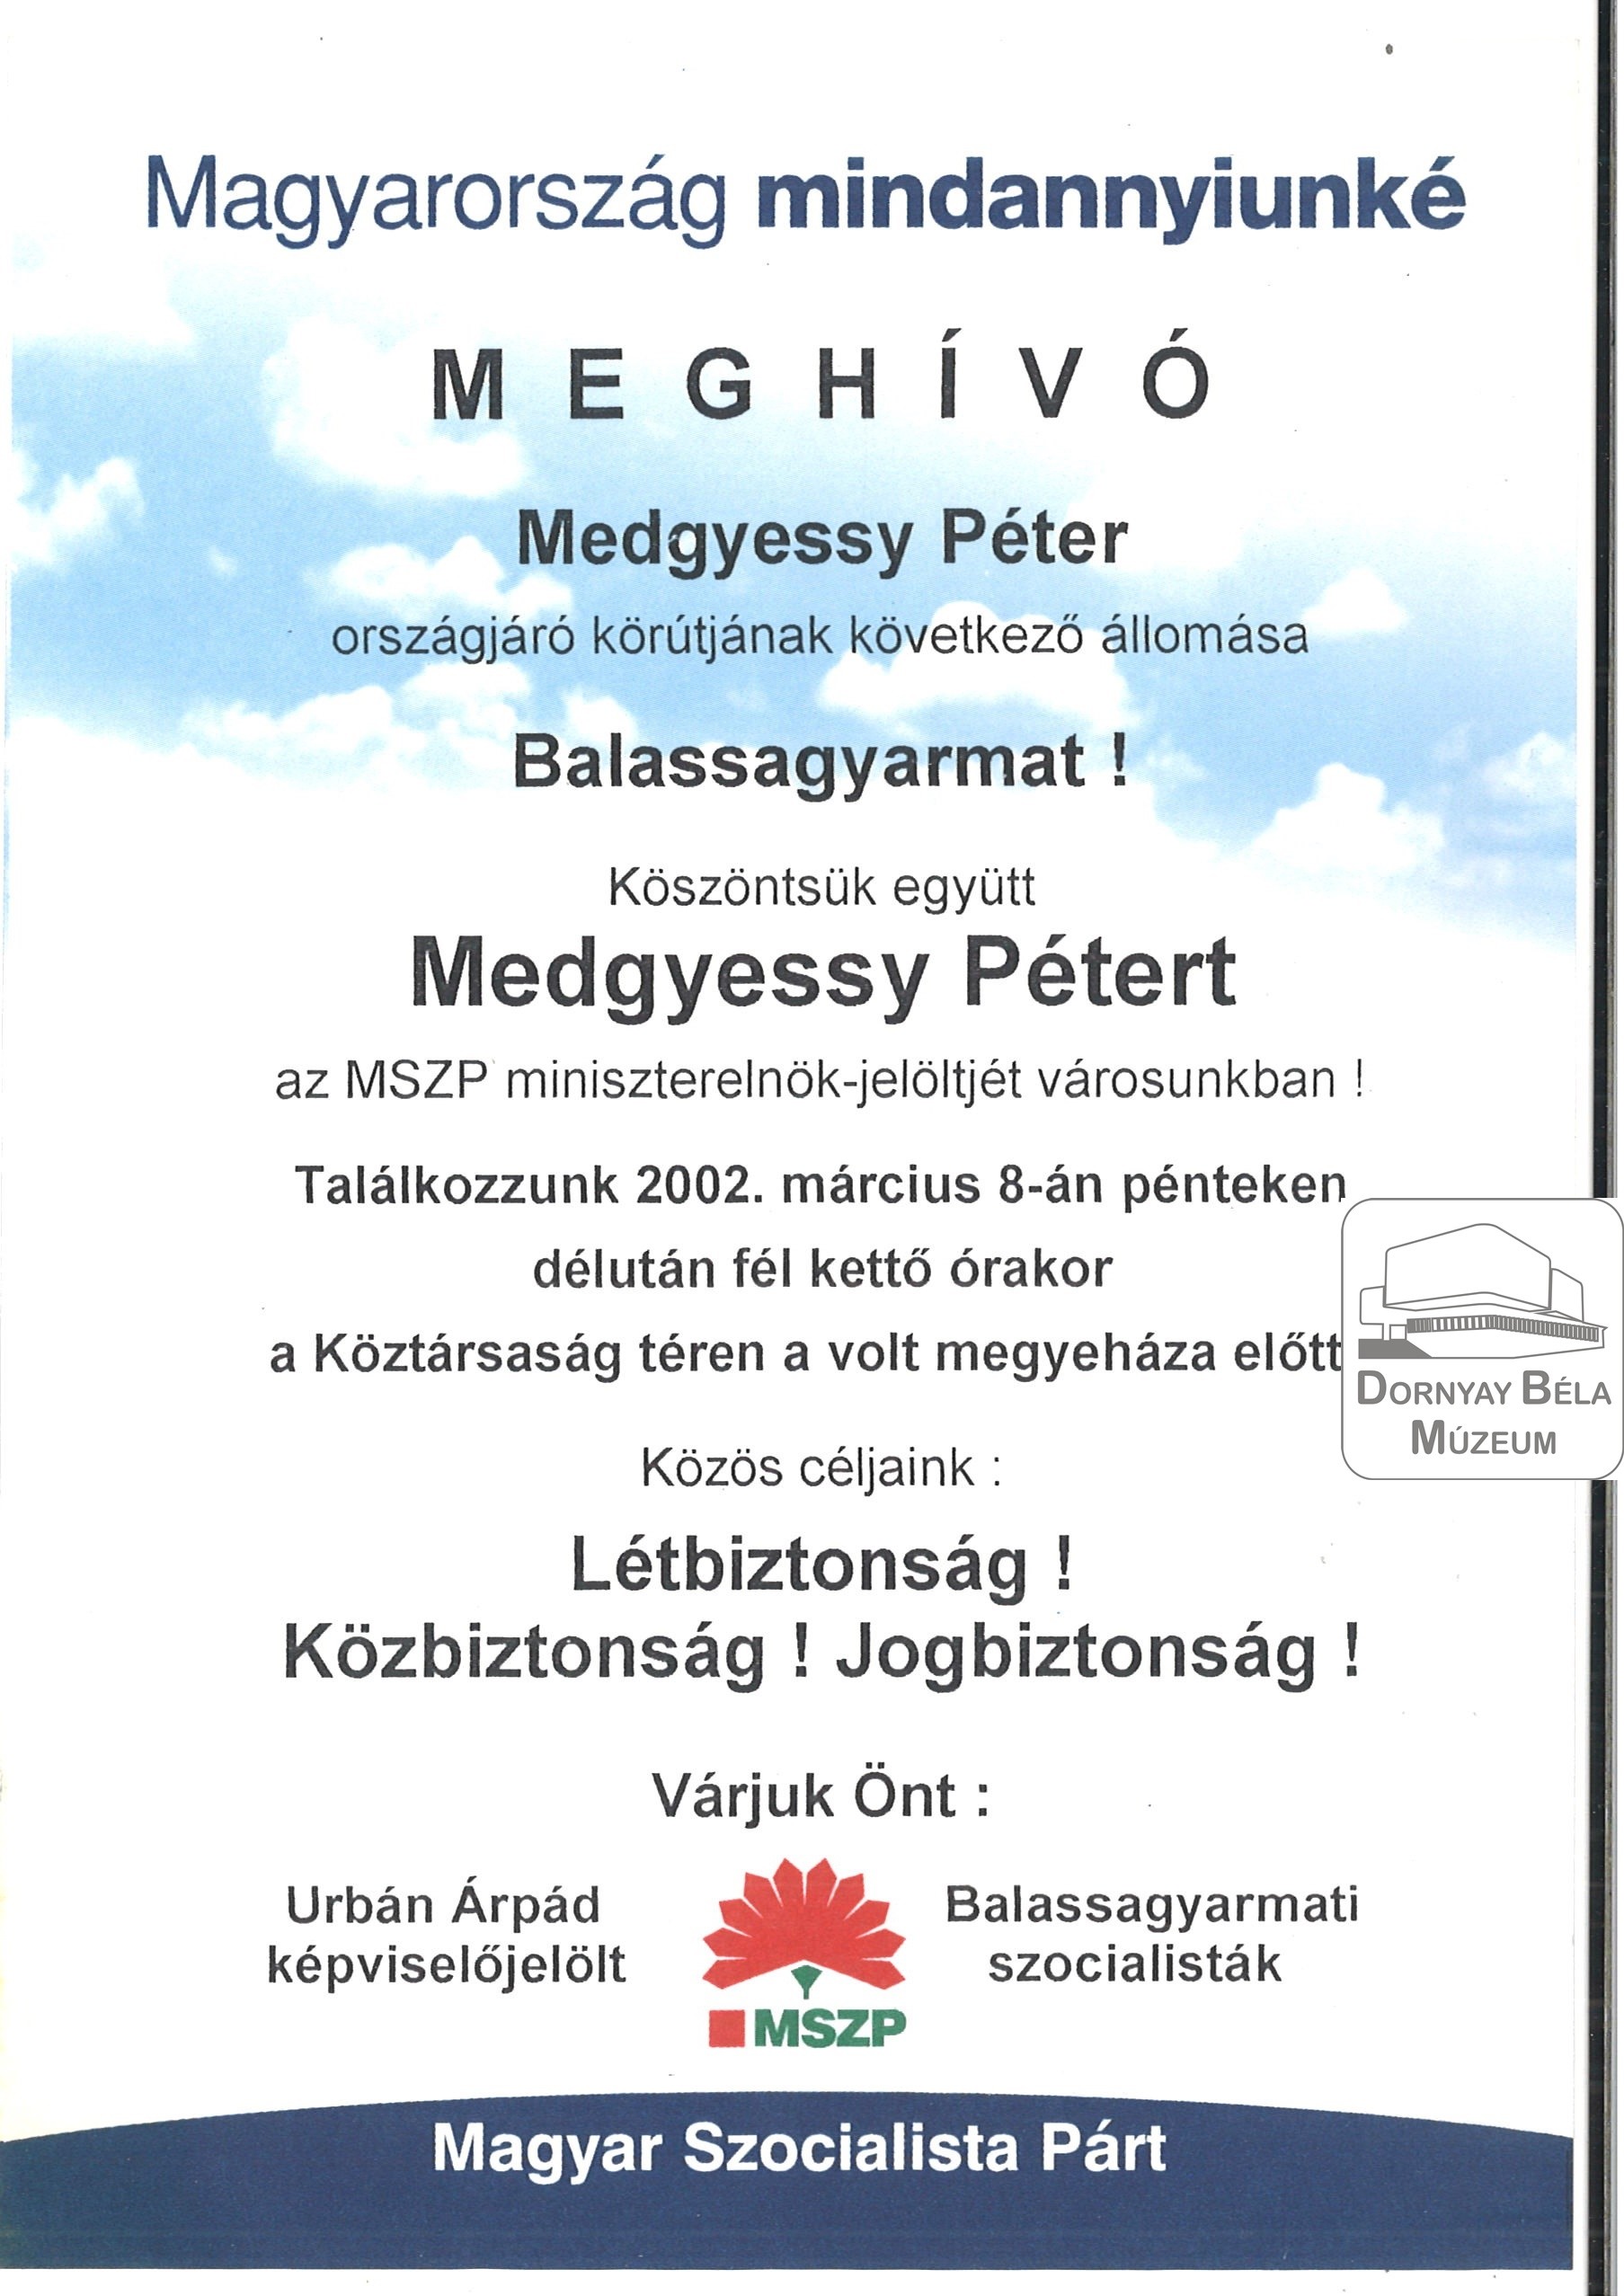 MSZP Meghívó Medgyessy Péter országjáró körútjára, Balassagyarmati rendezvényére (Dornyay Béla Múzeum, Salgótarján CC BY-NC-SA)